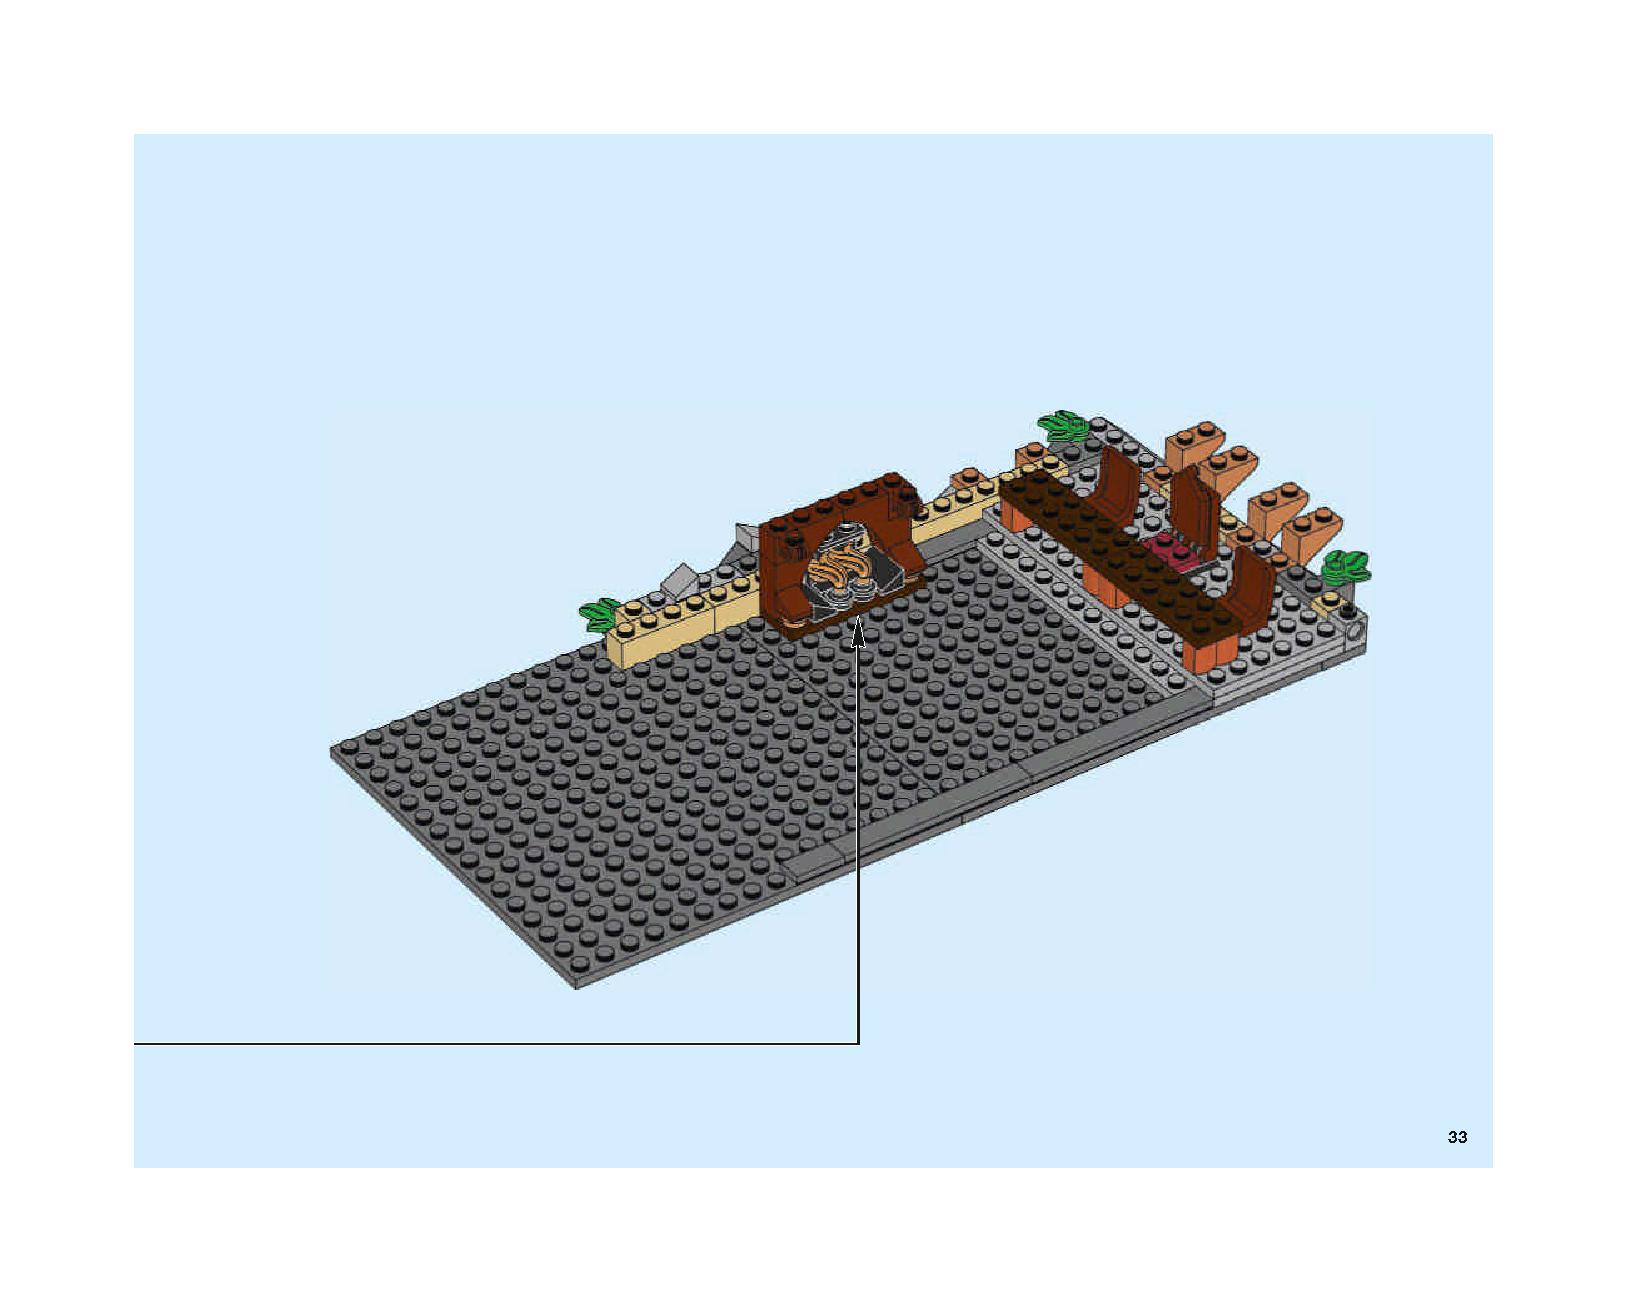 ホグワーツの大広間 75954 レゴの商品情報 レゴの説明書・組立方法 33 page